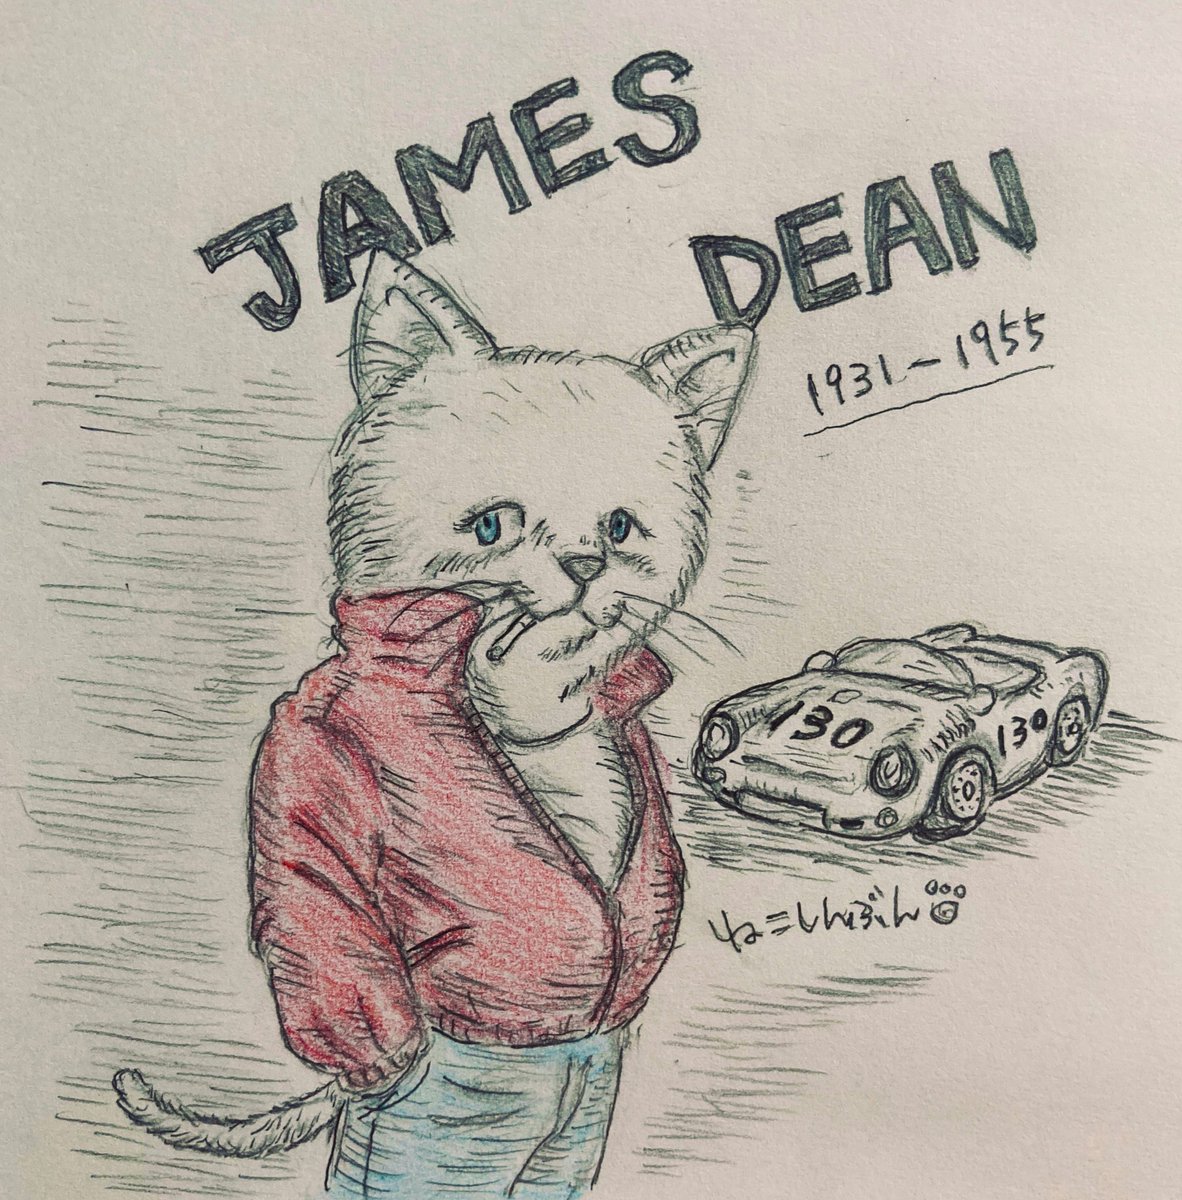 猫界のジェームズディーン
彼のいつまで色褪せないカッコ良さは憧れですね✨
優しさこそ、本当の強さだby猫ディーン?
#イラスト #アナログイラスト #猫イラスト #理由なき反抗 #JamesDean #映画 